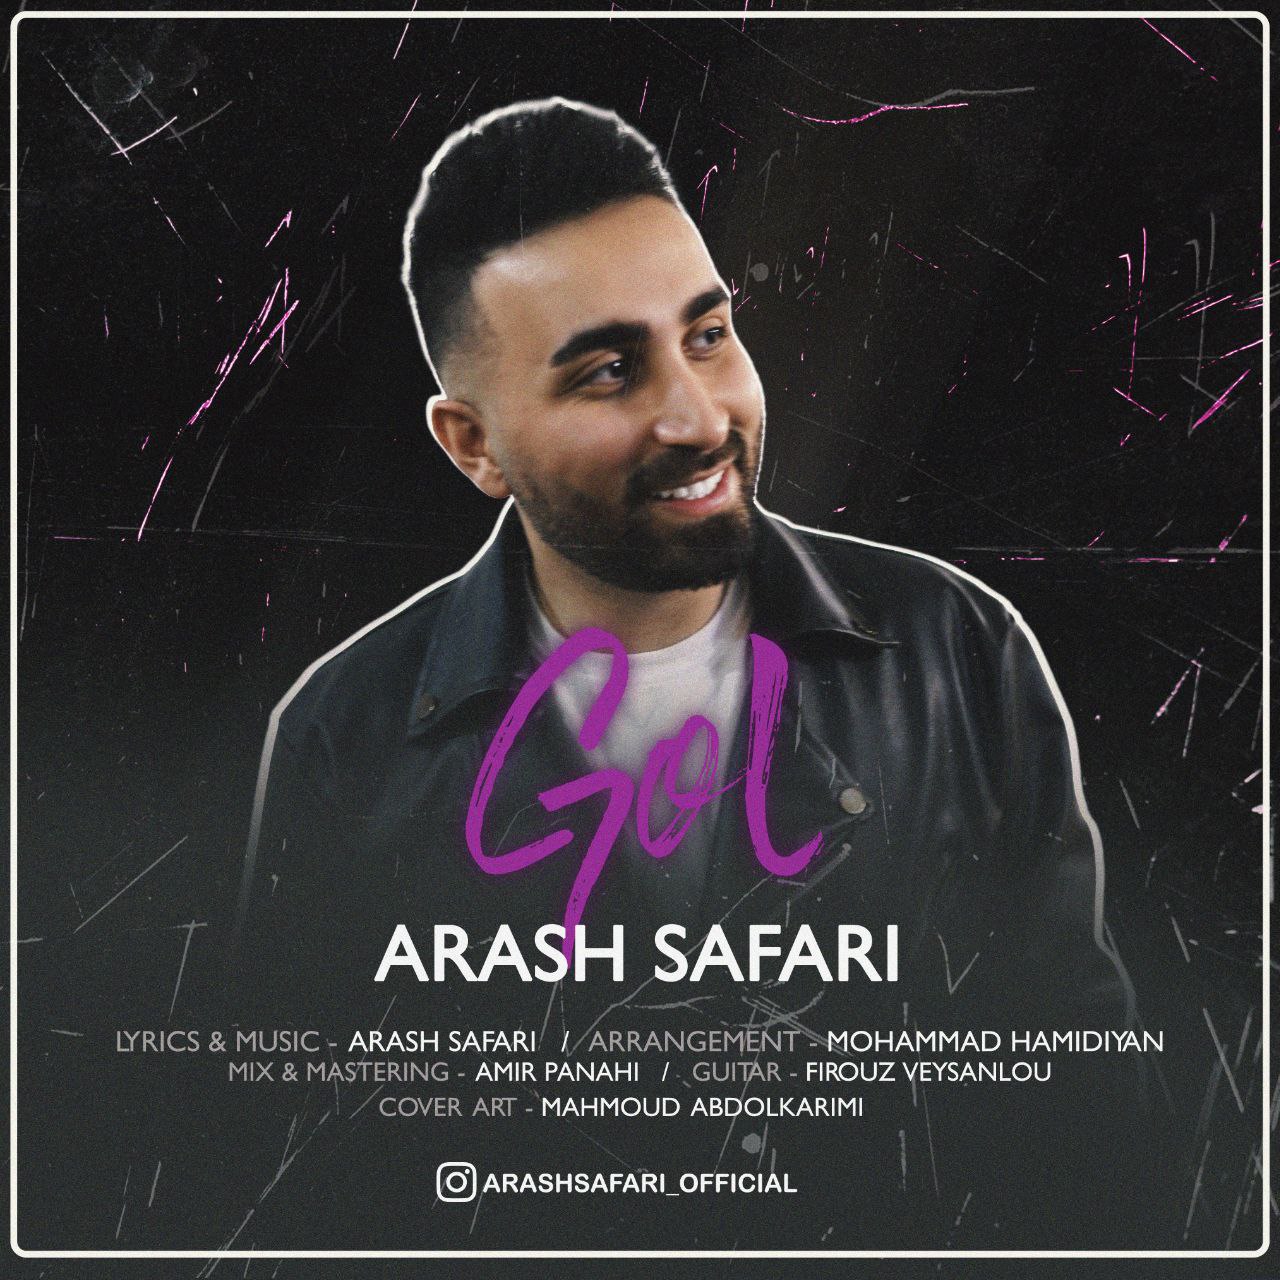 Arash Safari – Gol